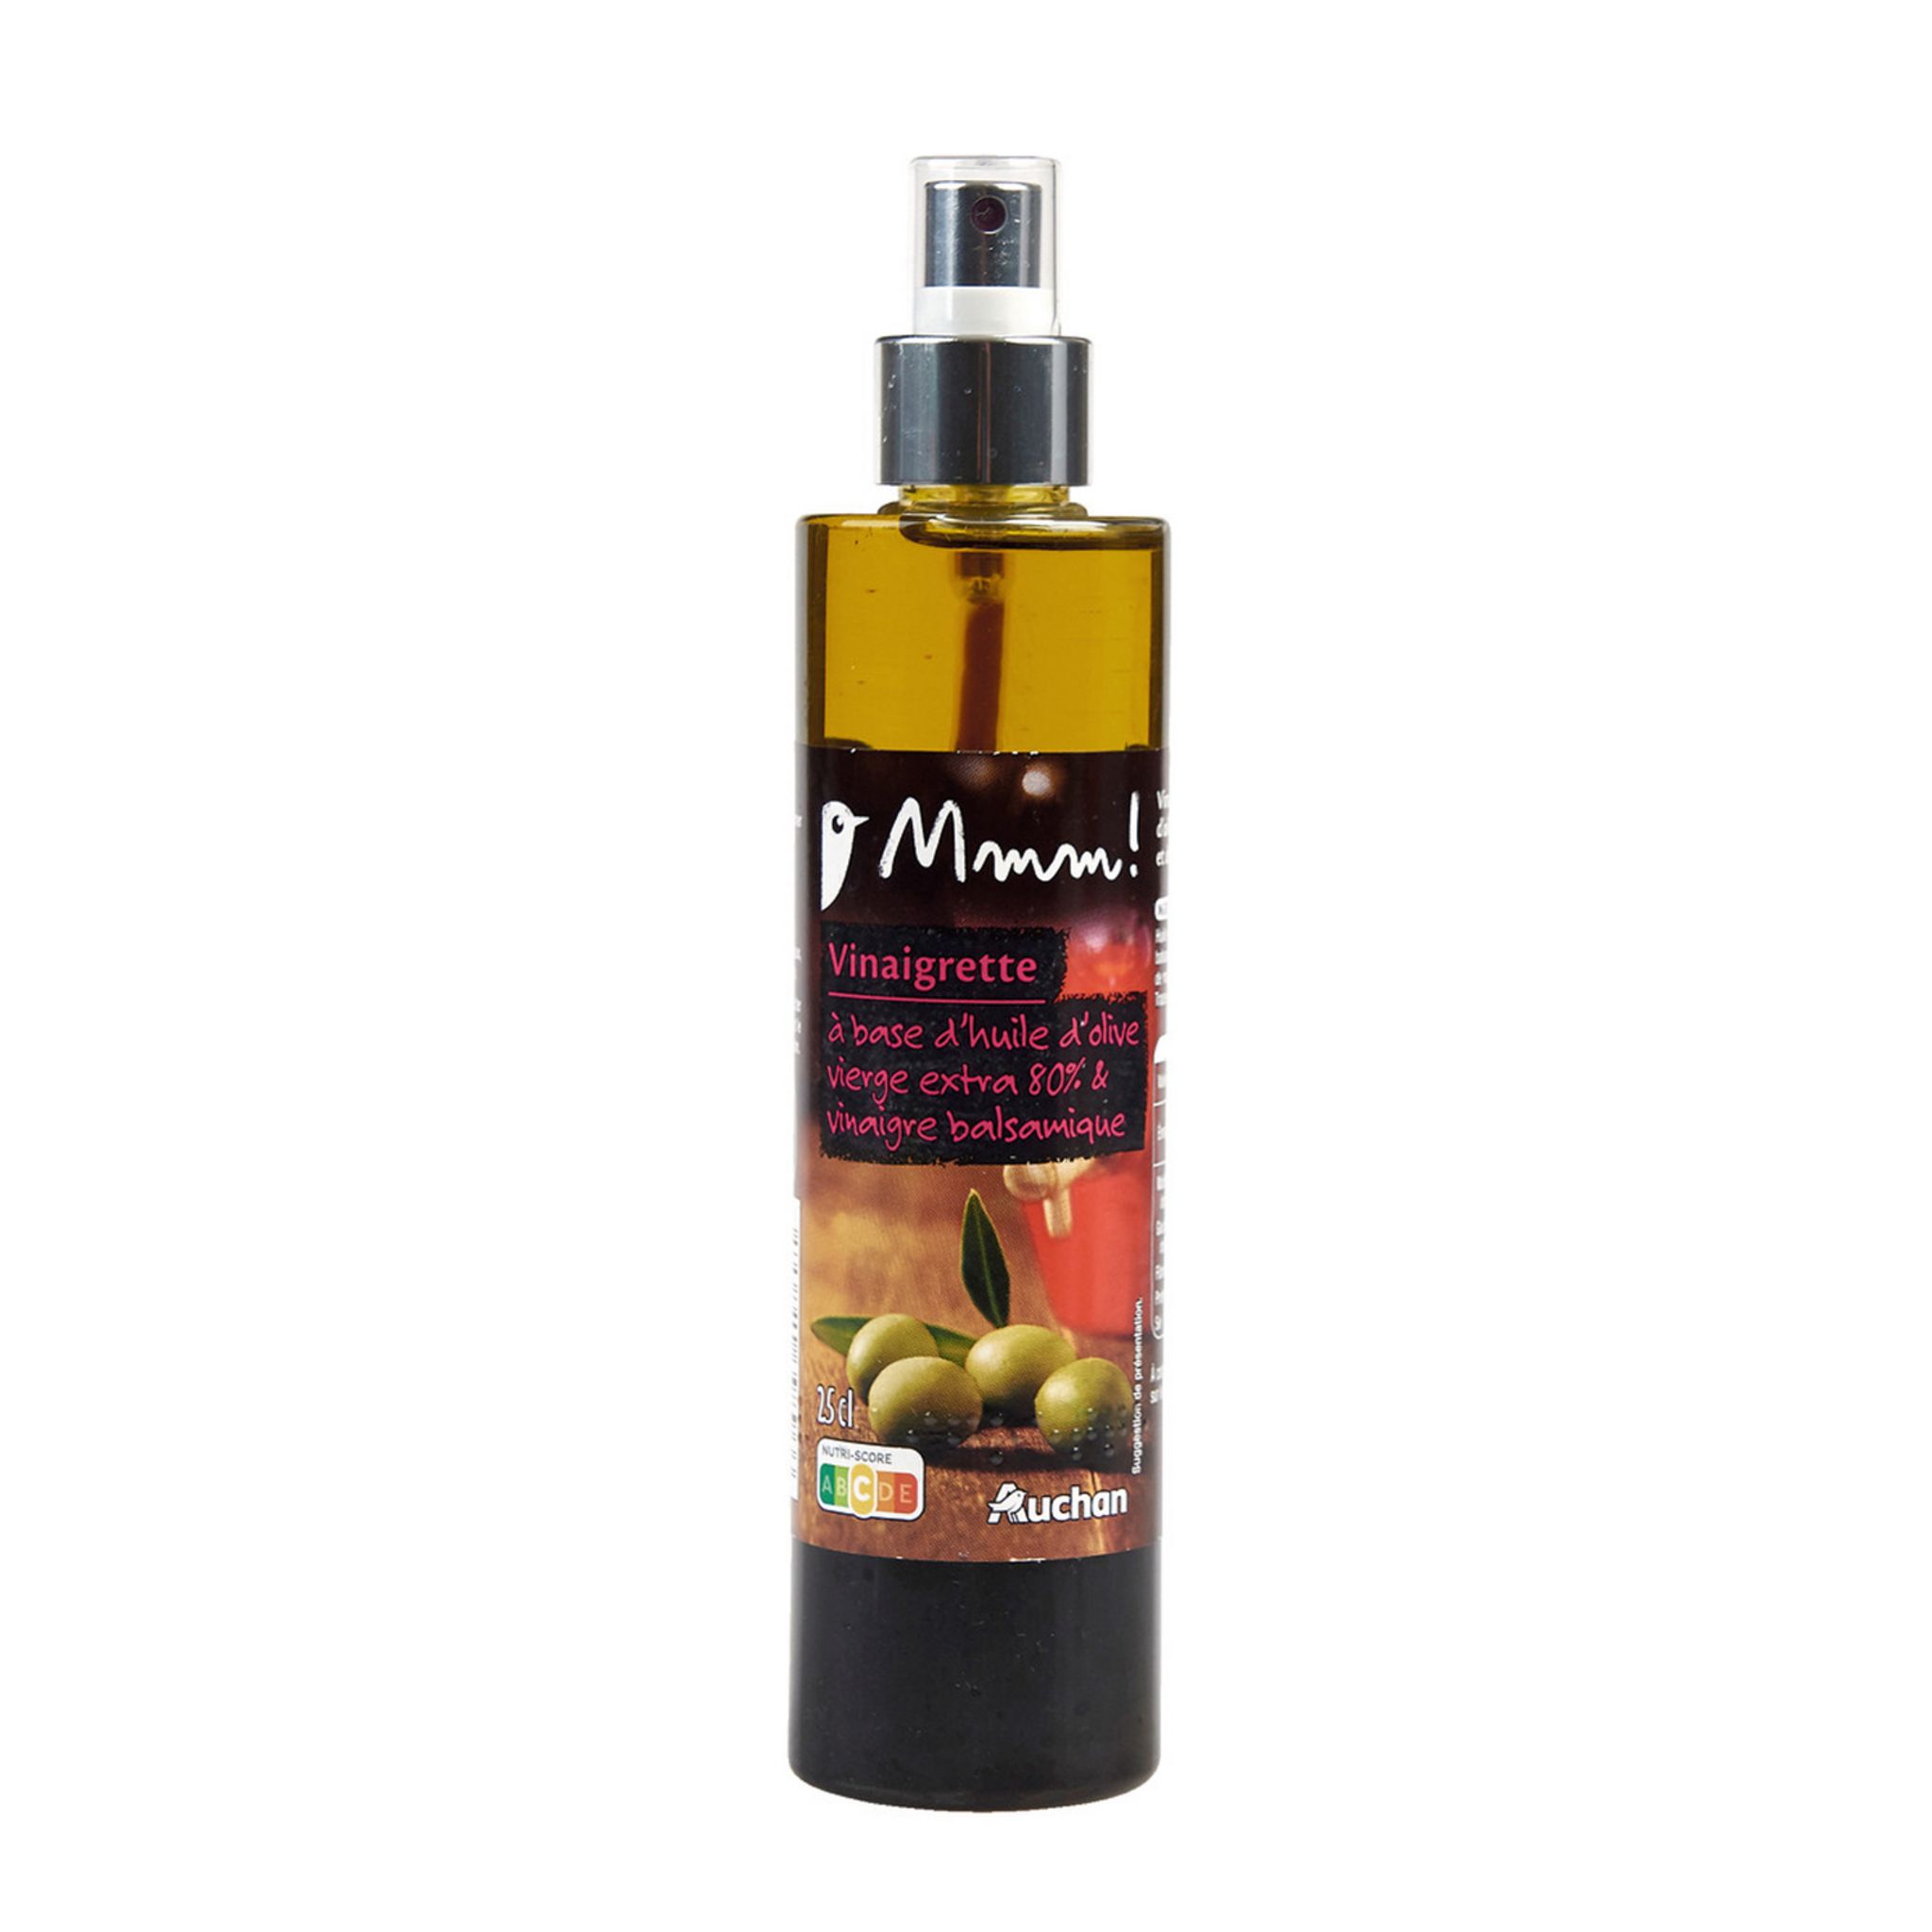 Vinaigrette spray 10 cl Guglielmi huile d'olive et vinaigre balsamique